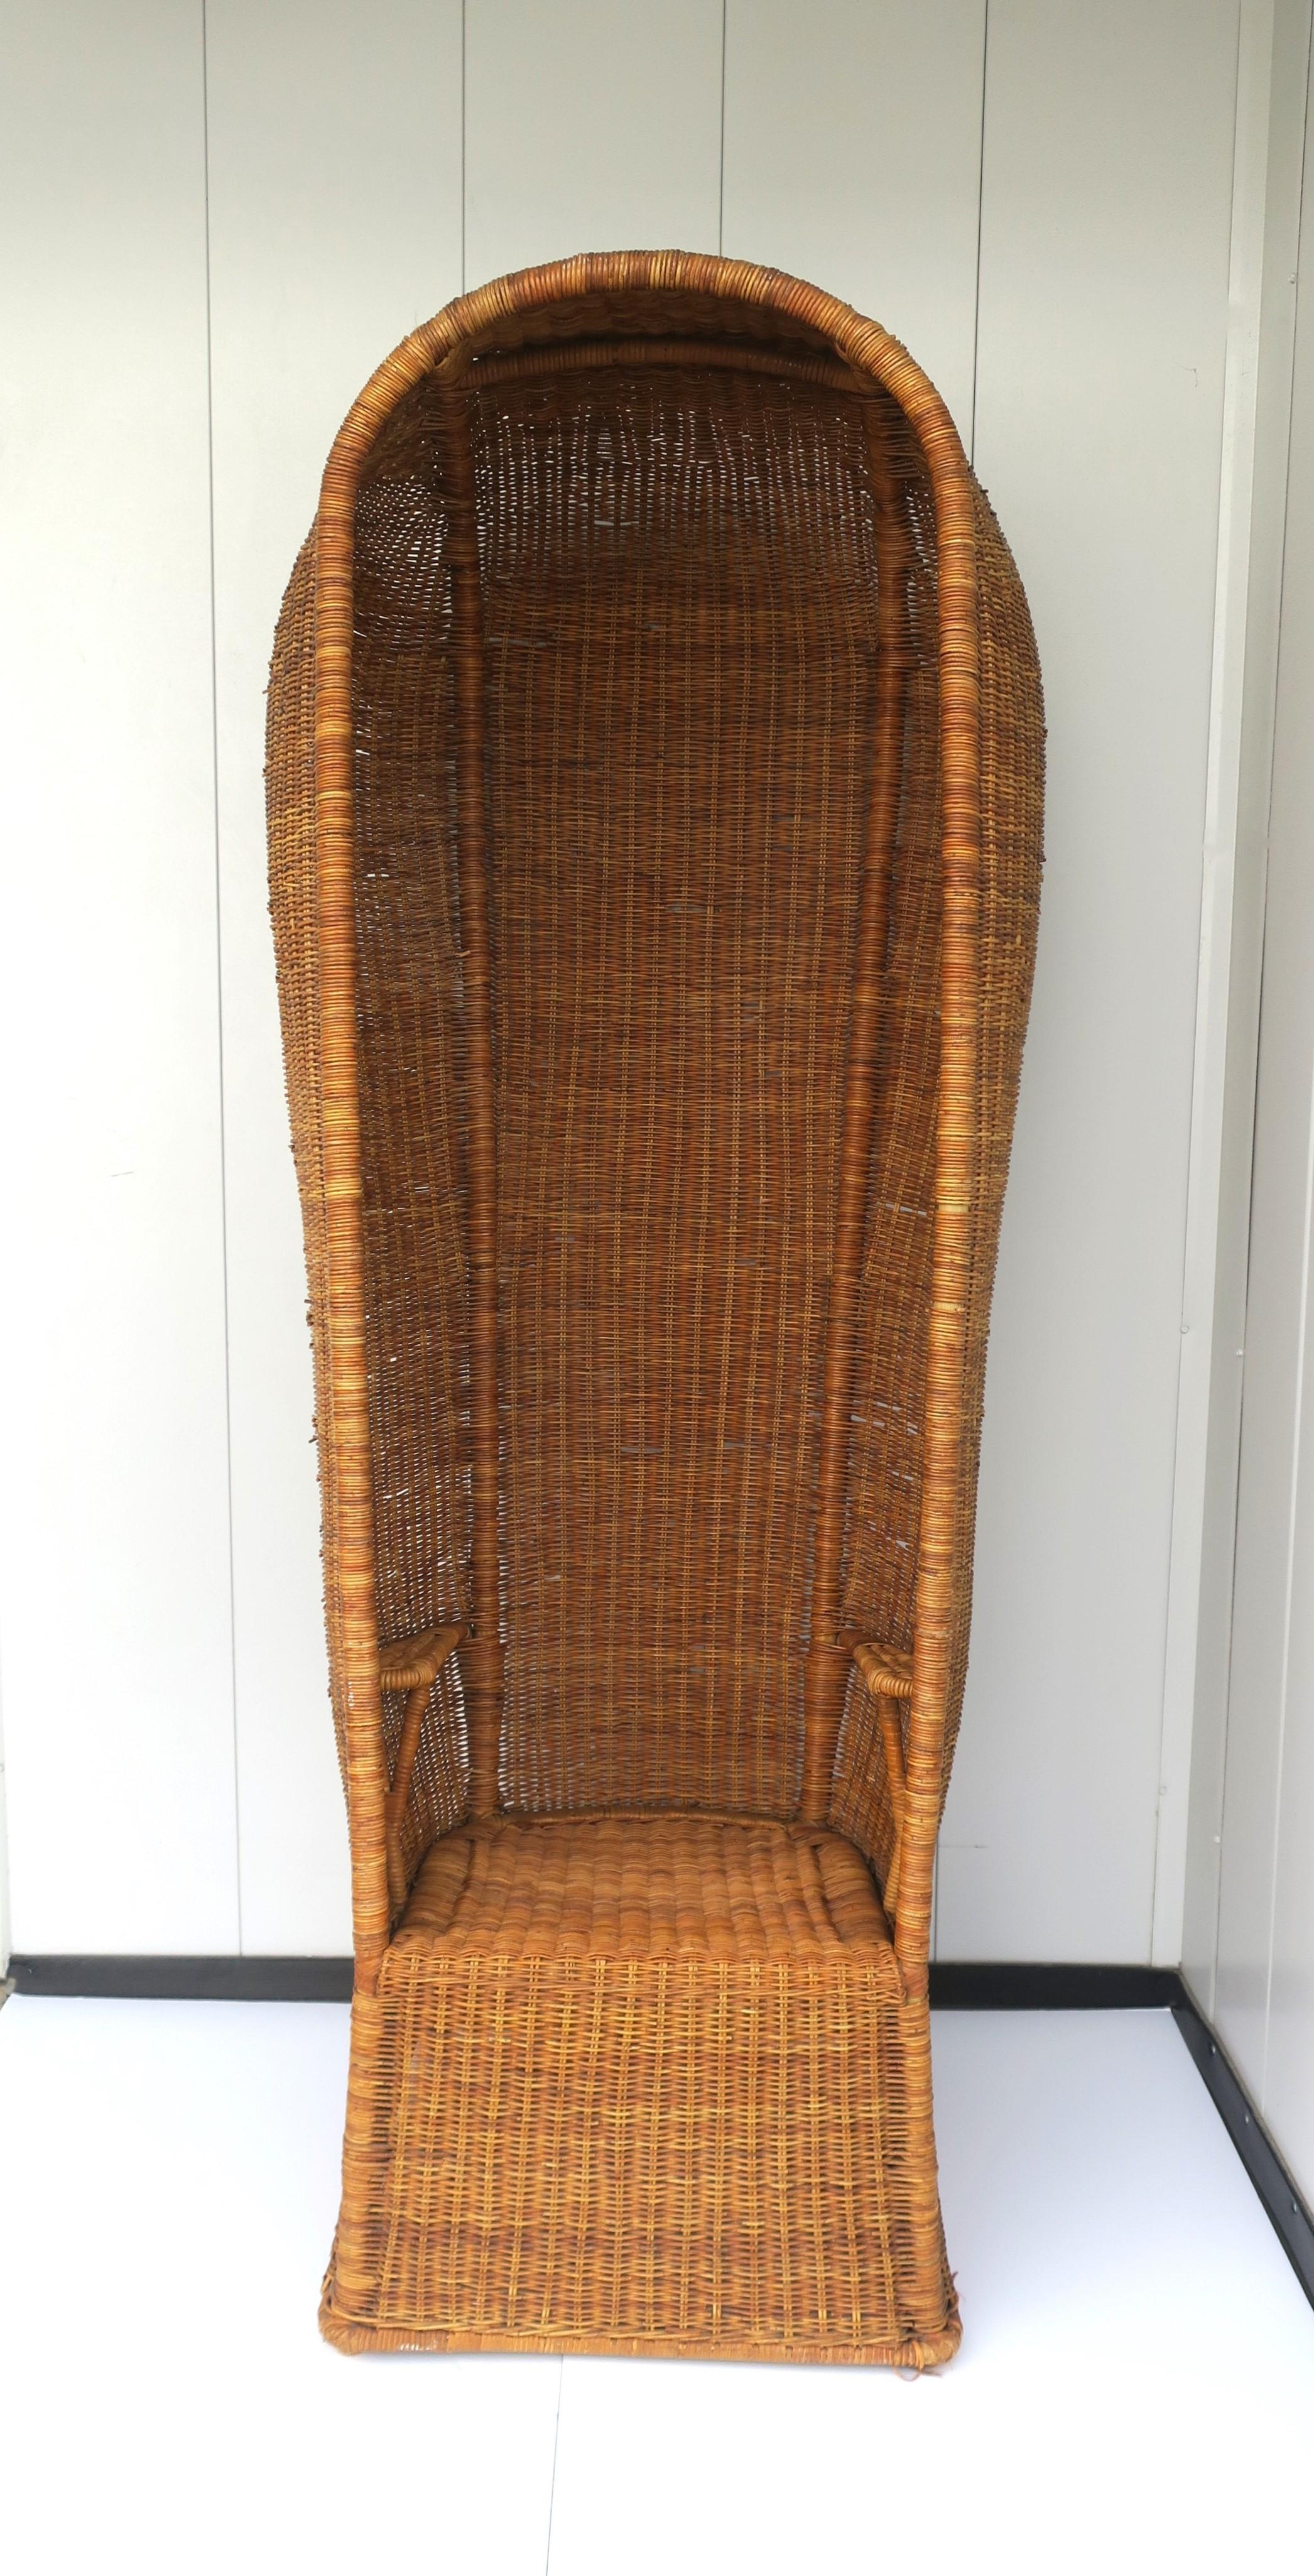 Ein schöner und seltener Korbgeflecht-Haubenstuhl, böhmisch, ca. 1960er, 1970er Jahre. Der Stuhl ist komplett aus Weidengeflecht, mit Armlehnen aus Weidengeflecht und einem einfachen runden Sitzkissen (das Sitzkissen ist abnehmbar, wie auf den